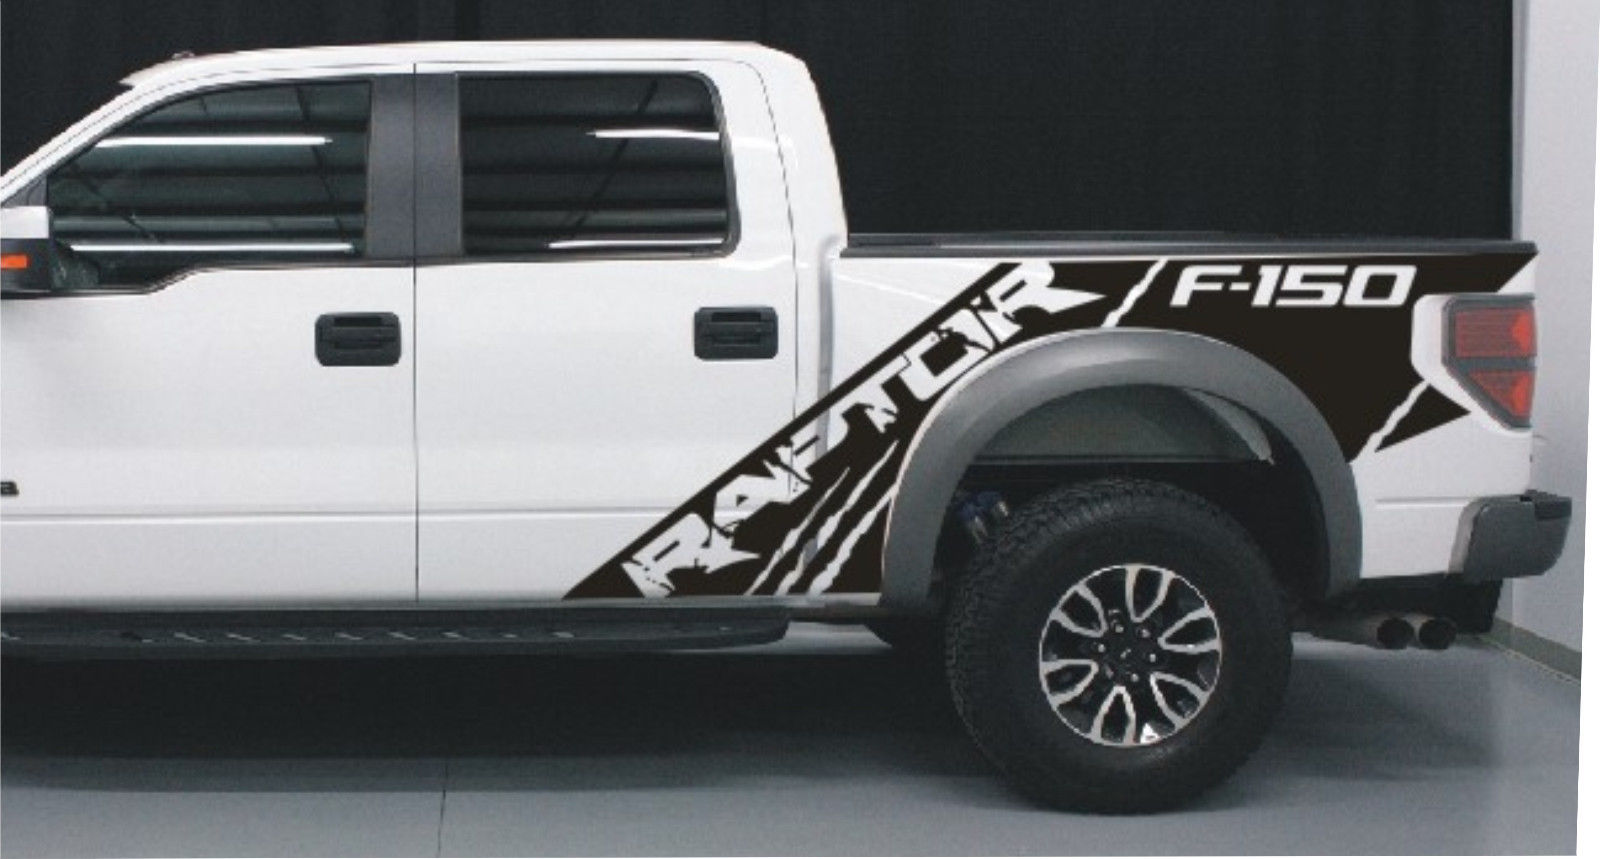 Ford Raptor SVT F150 Bedside Predator Decalcomanie grafiche in vinile per modelli dal 2010 al 2014